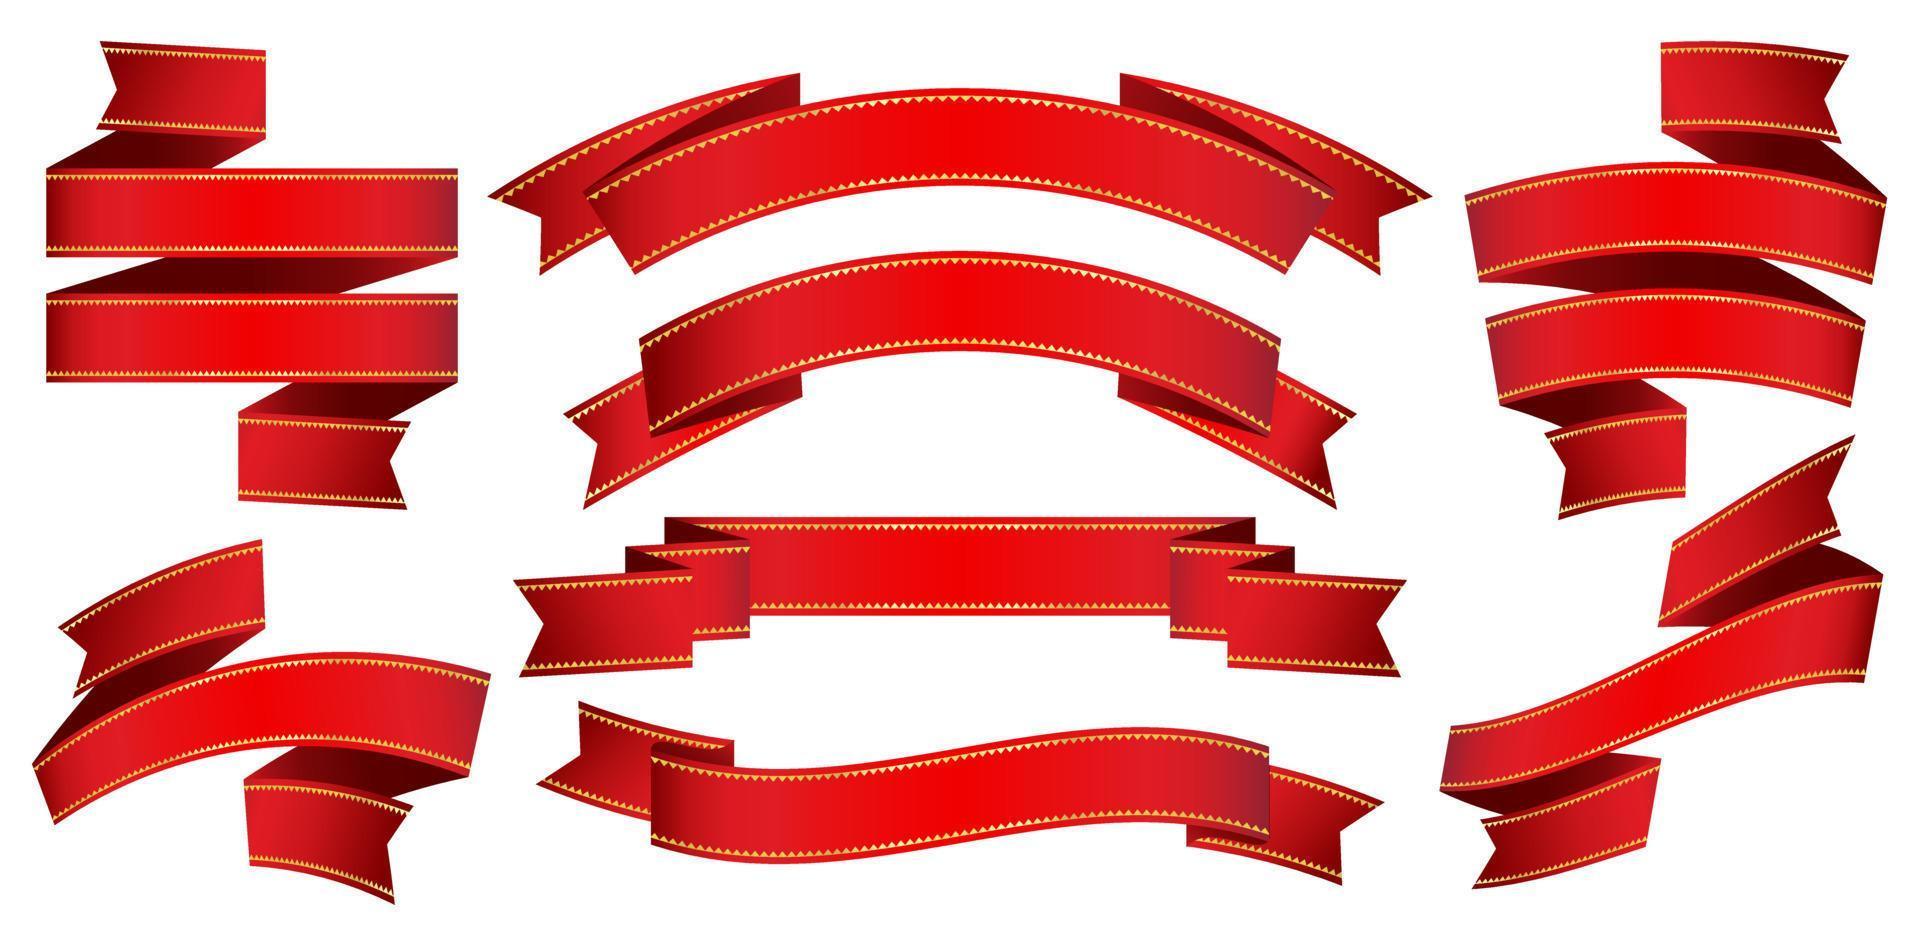 vetor ilustração oito conjunto vermelho fitas rolagem isolado fundos para conveses, colagens, cena desenhos, do utilizador interface, branding ou identidade campanhas, papelaria e impressão layouts, apresentações